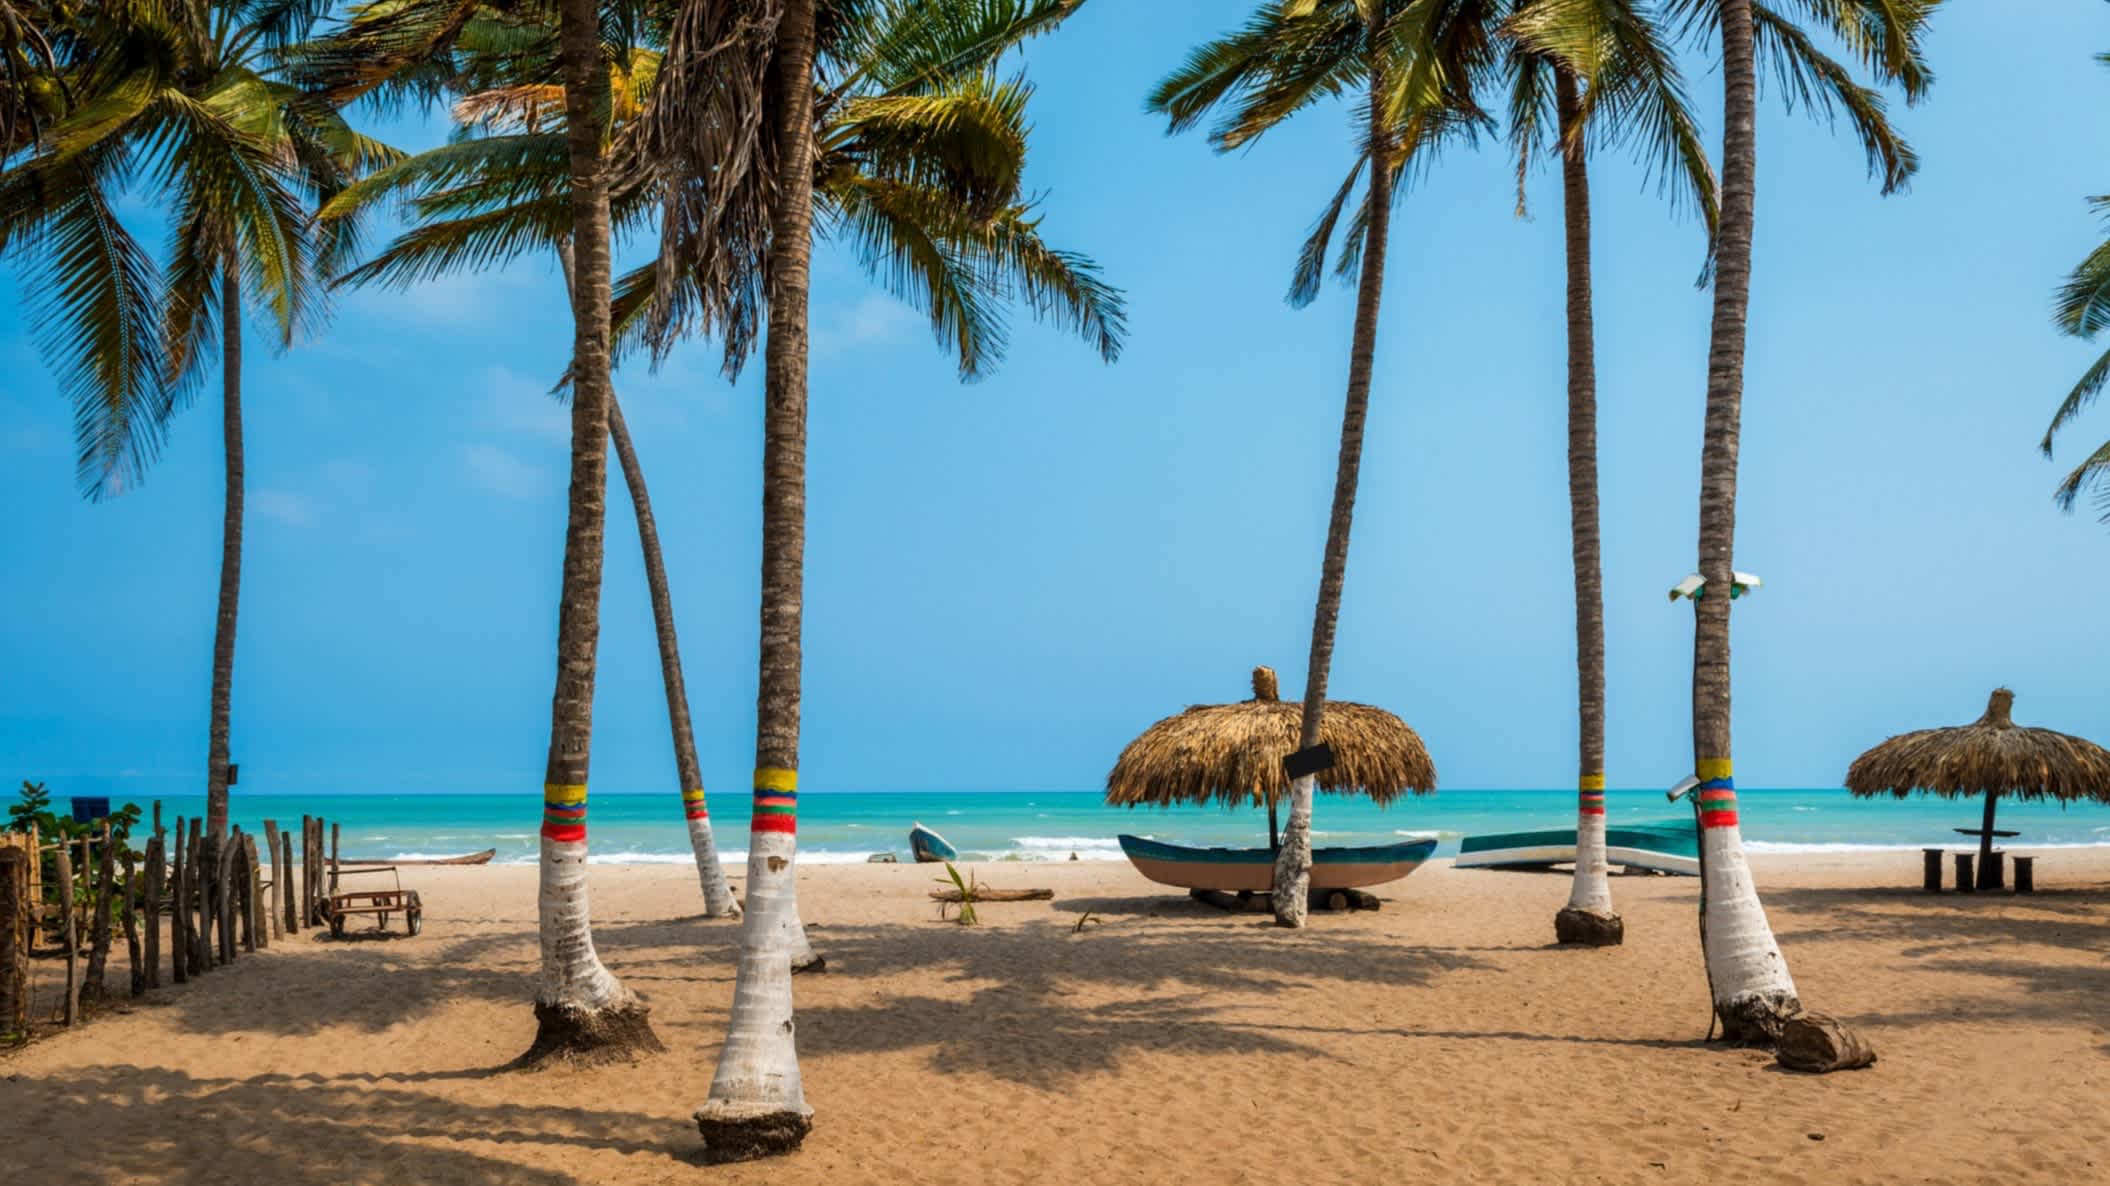 Der schöne Strand von Palomino an der Karibikküste von Kolumbien, Südamerika mit Palmen, Sonnenschirmen und dem Meer im Bild.